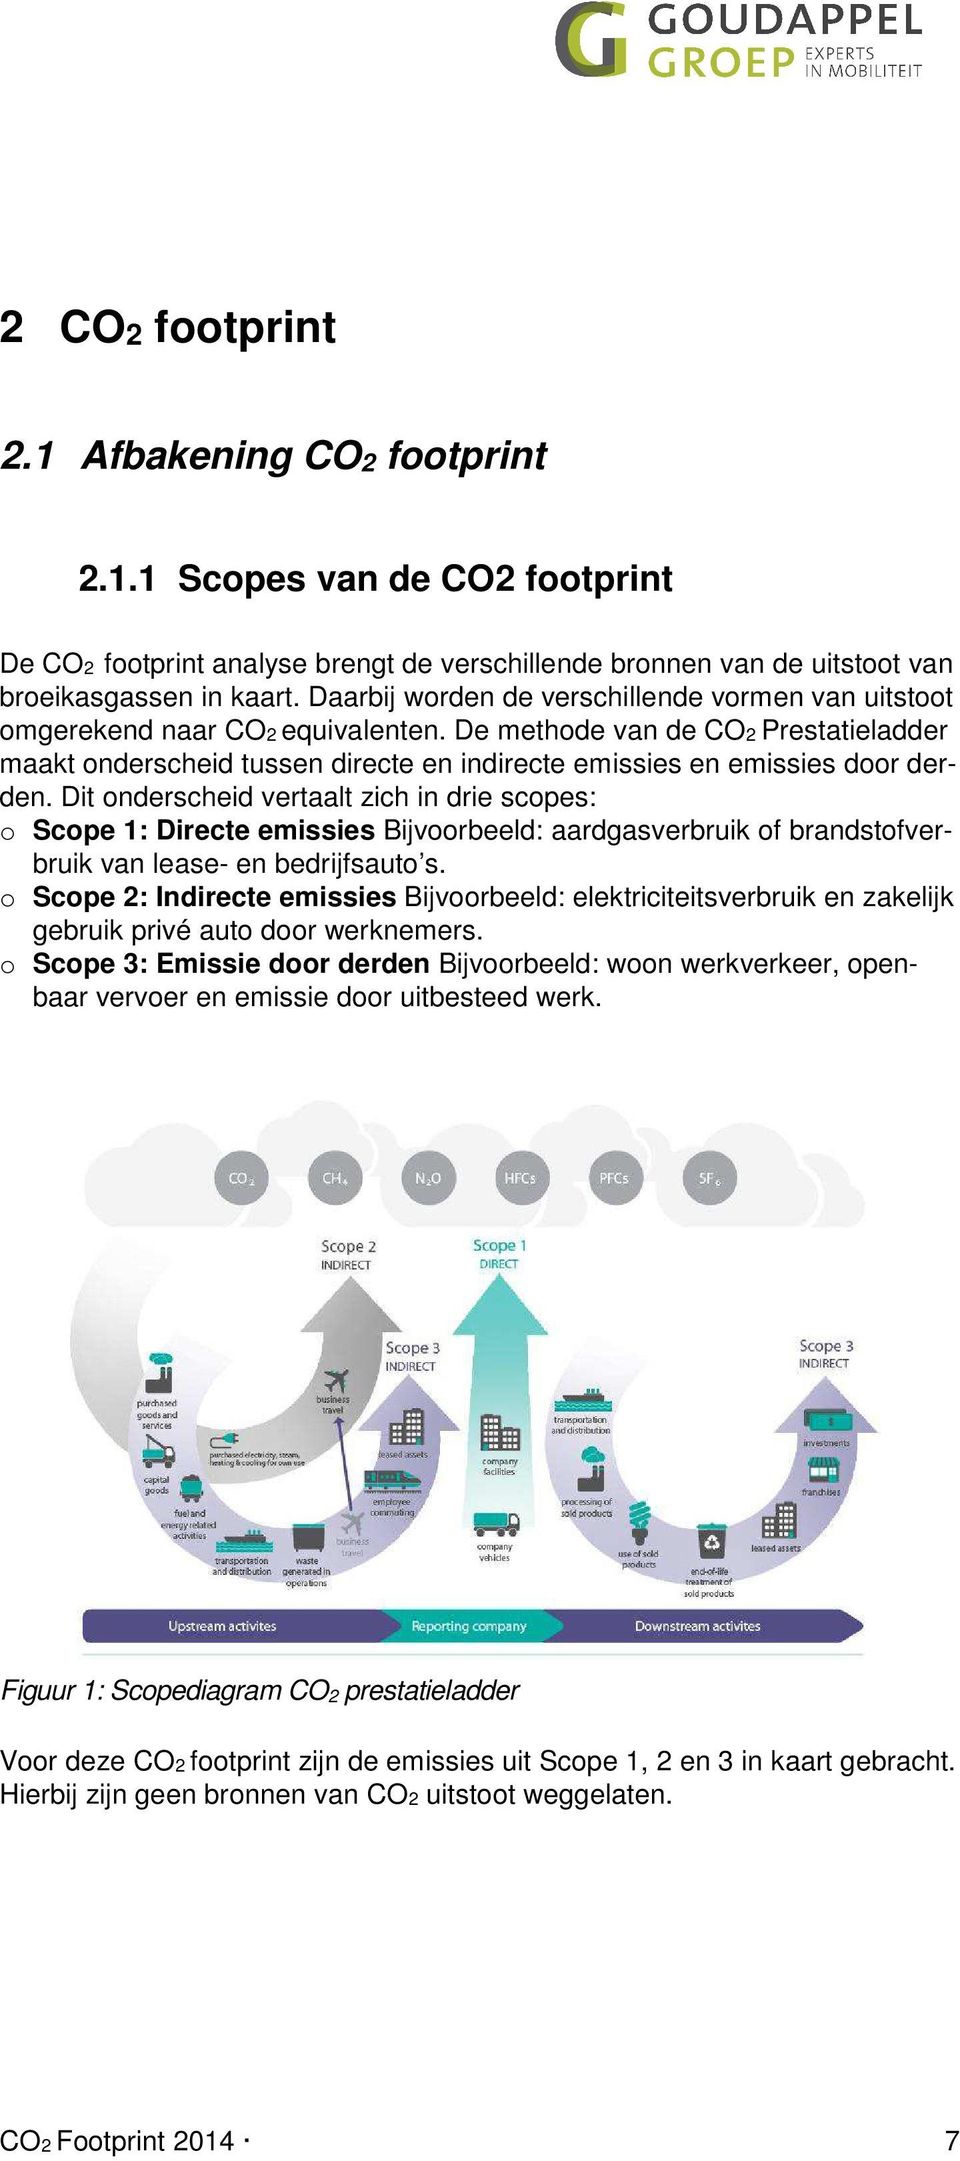 De methode van de CO2 Prestatieladder maakt onderscheid tussen directe en indirecte emissies en emissies door derden.